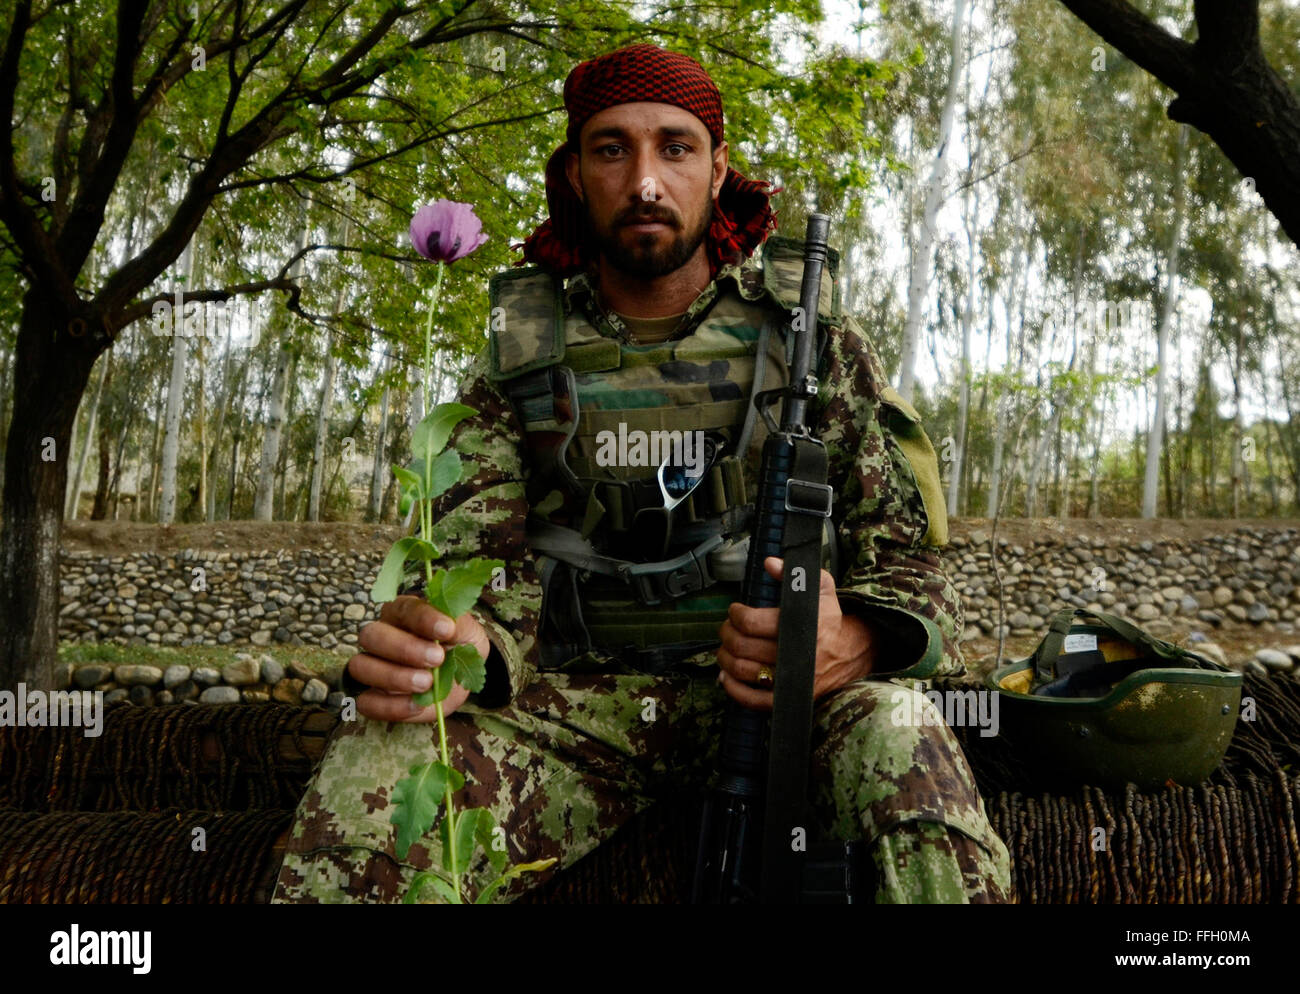 Un esercito nazionale afghano soldato pone con un papavero nei pressi del villaggio di Karizonah, Afghanistan. Il raccolto di papavero è una fonte importante di finanziamento per i gruppi estremisti coinvolti in i talebani-led insurrezione in Afghanistan. Foto Stock